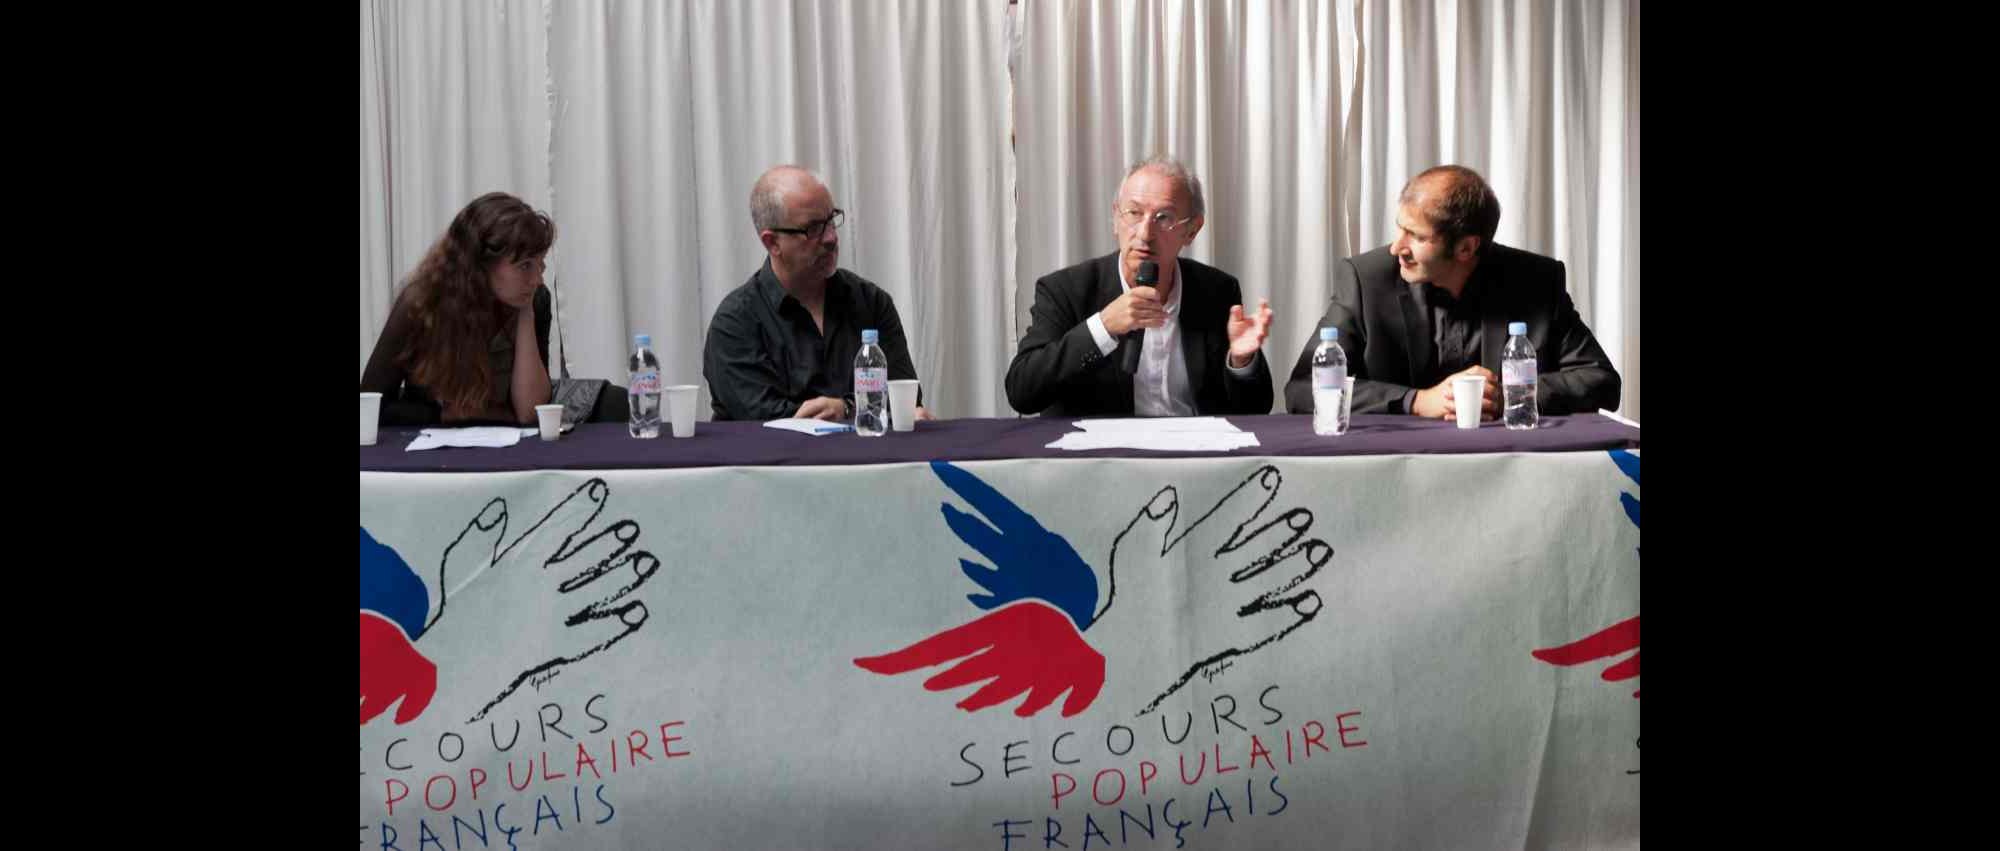 De droite à gauche : Abdel Ghazi, Gérard Rouyer, Gérald Briant